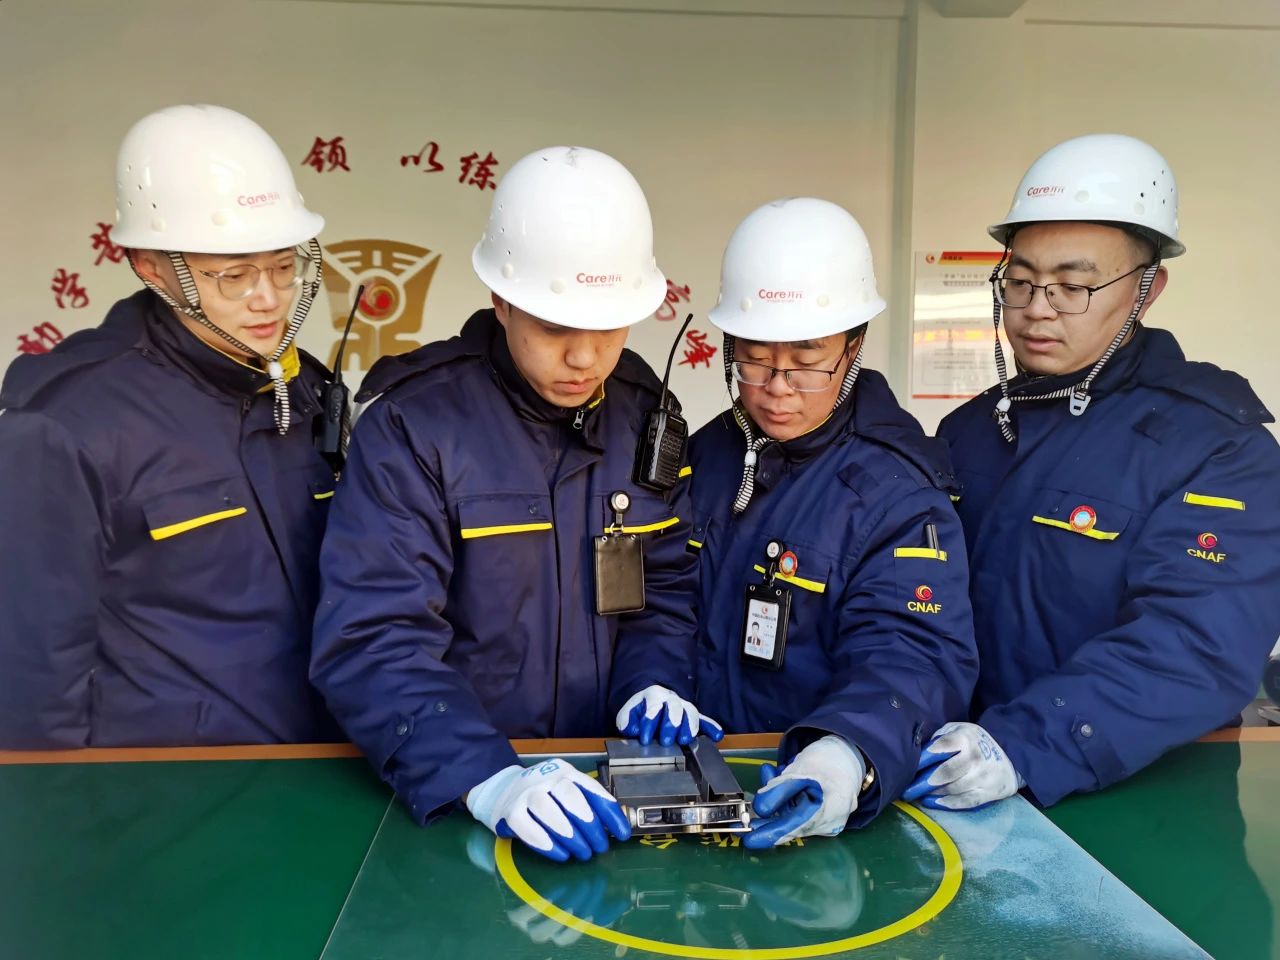 中国航油山西分公司创新驱动提质效 奋进攻坚创一流